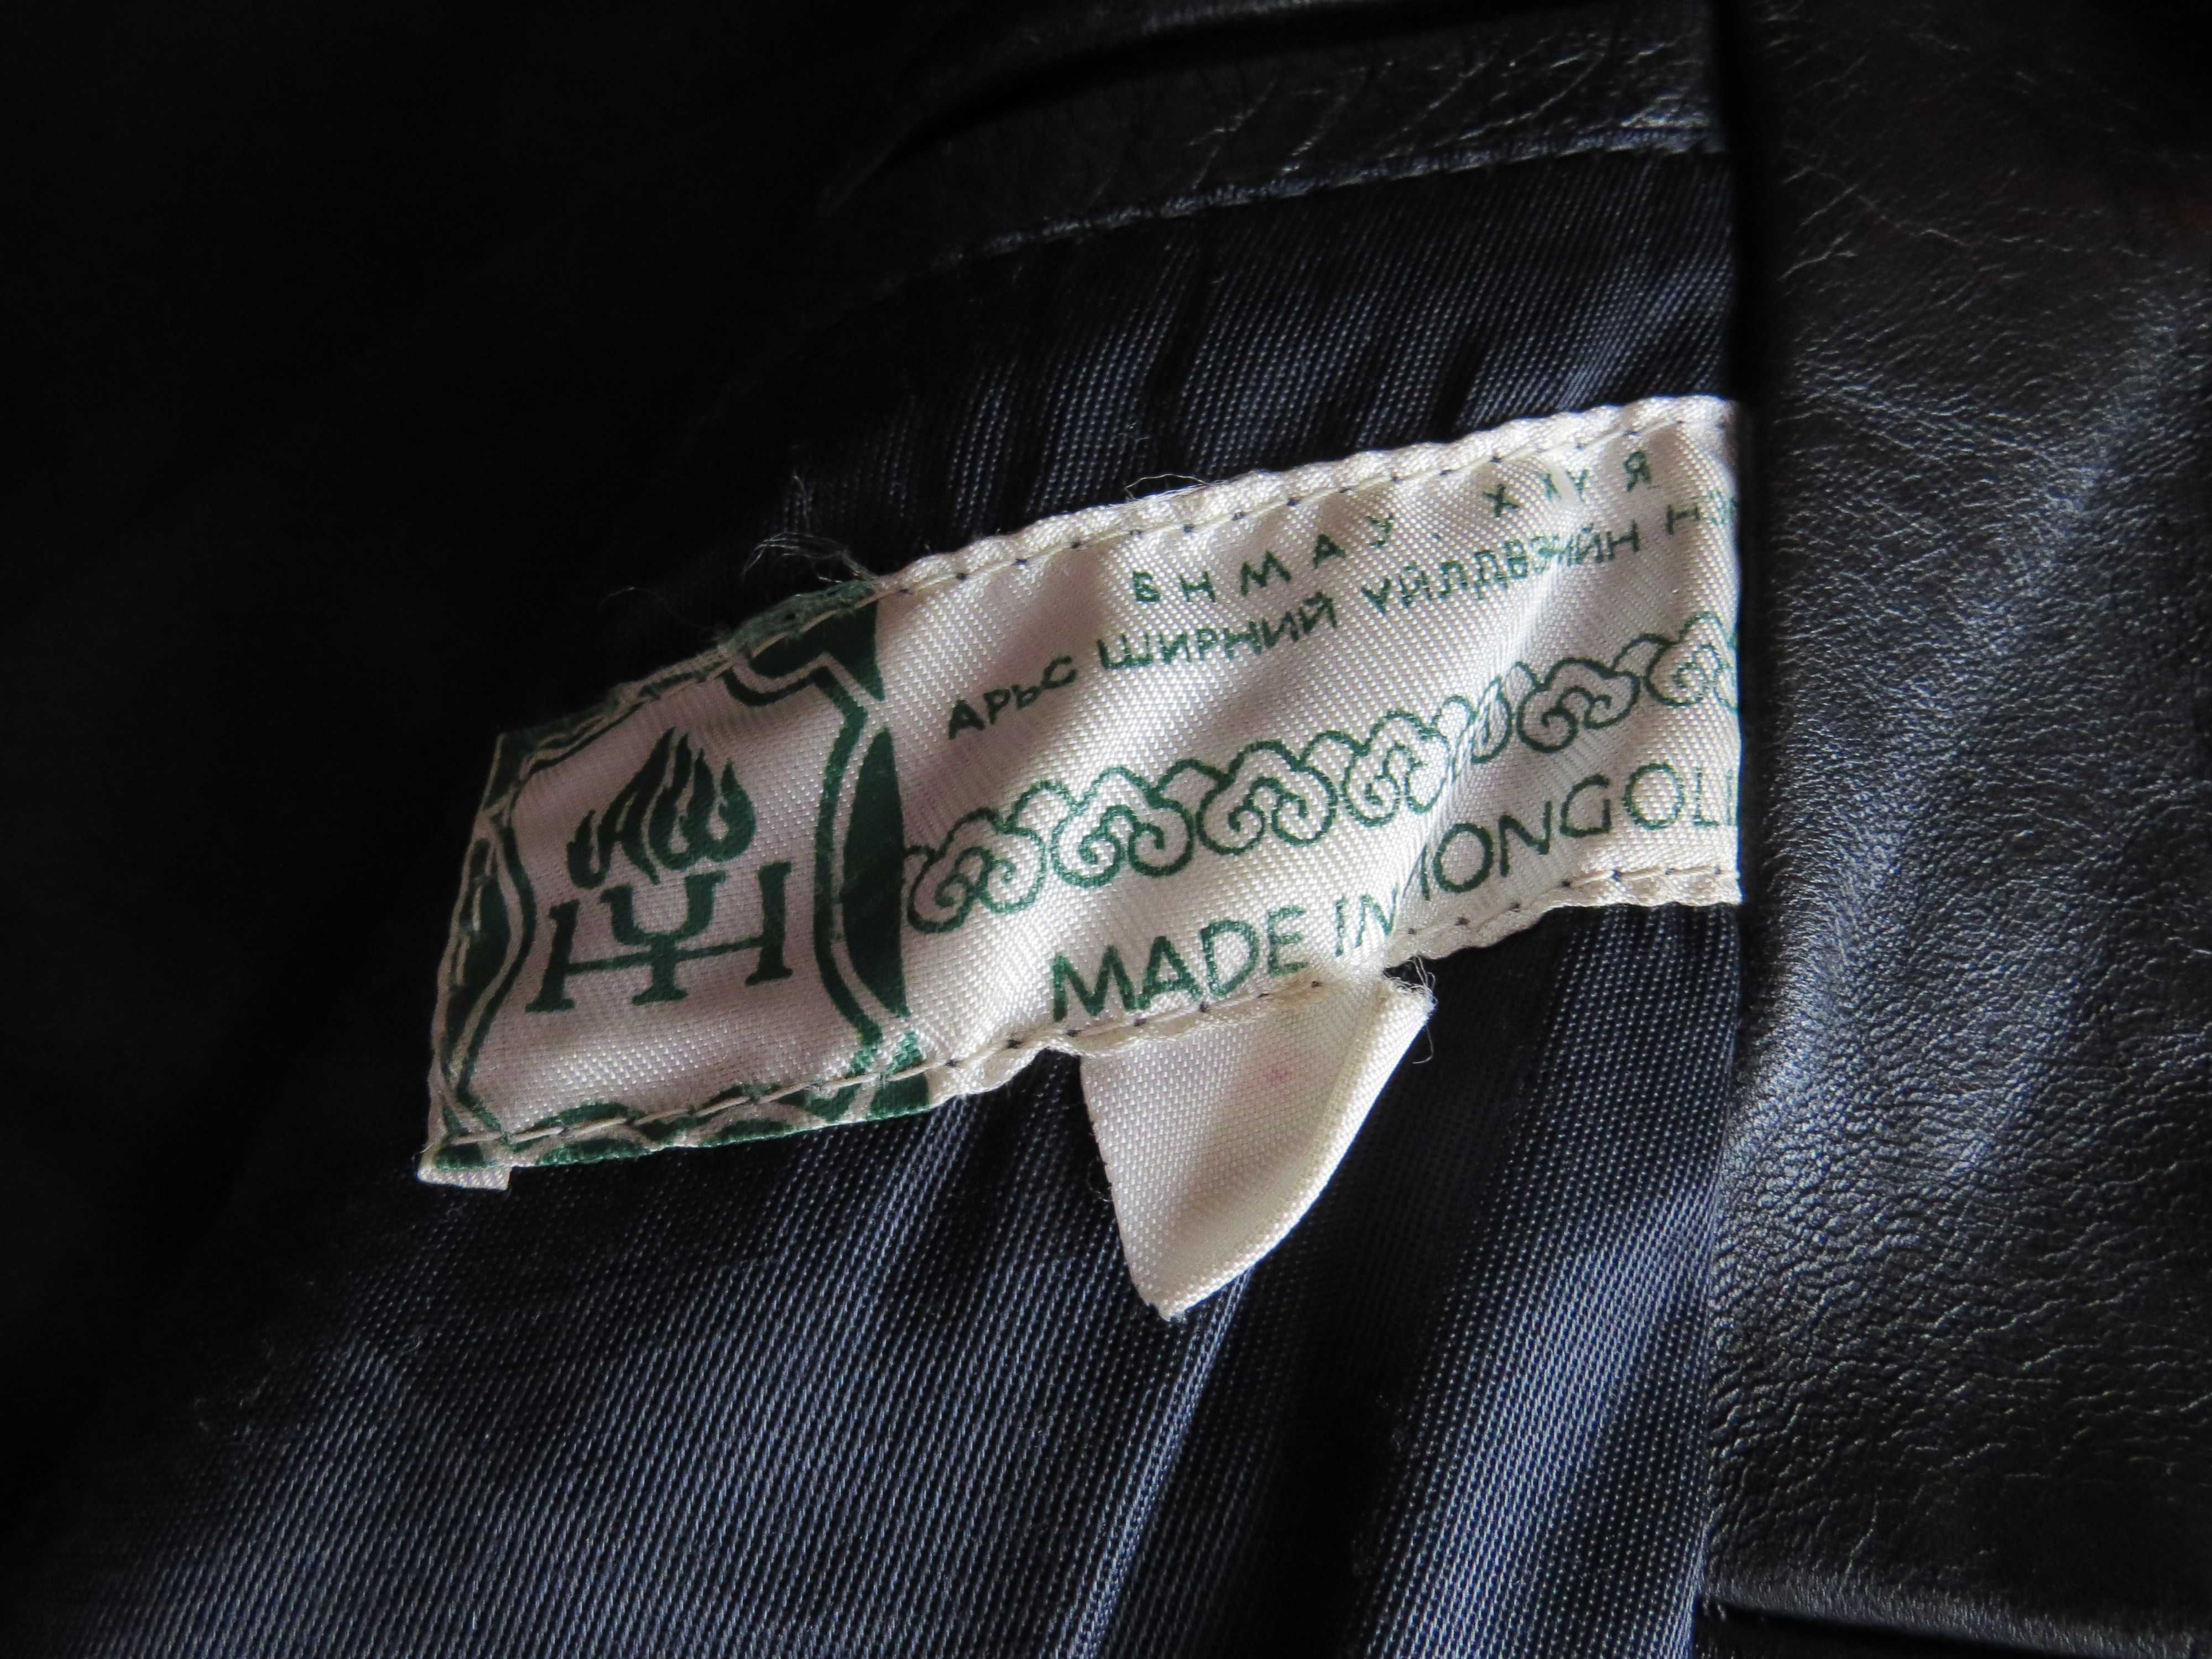 Куртка кожаная подростковая, размер 46-48, производство: Монголия